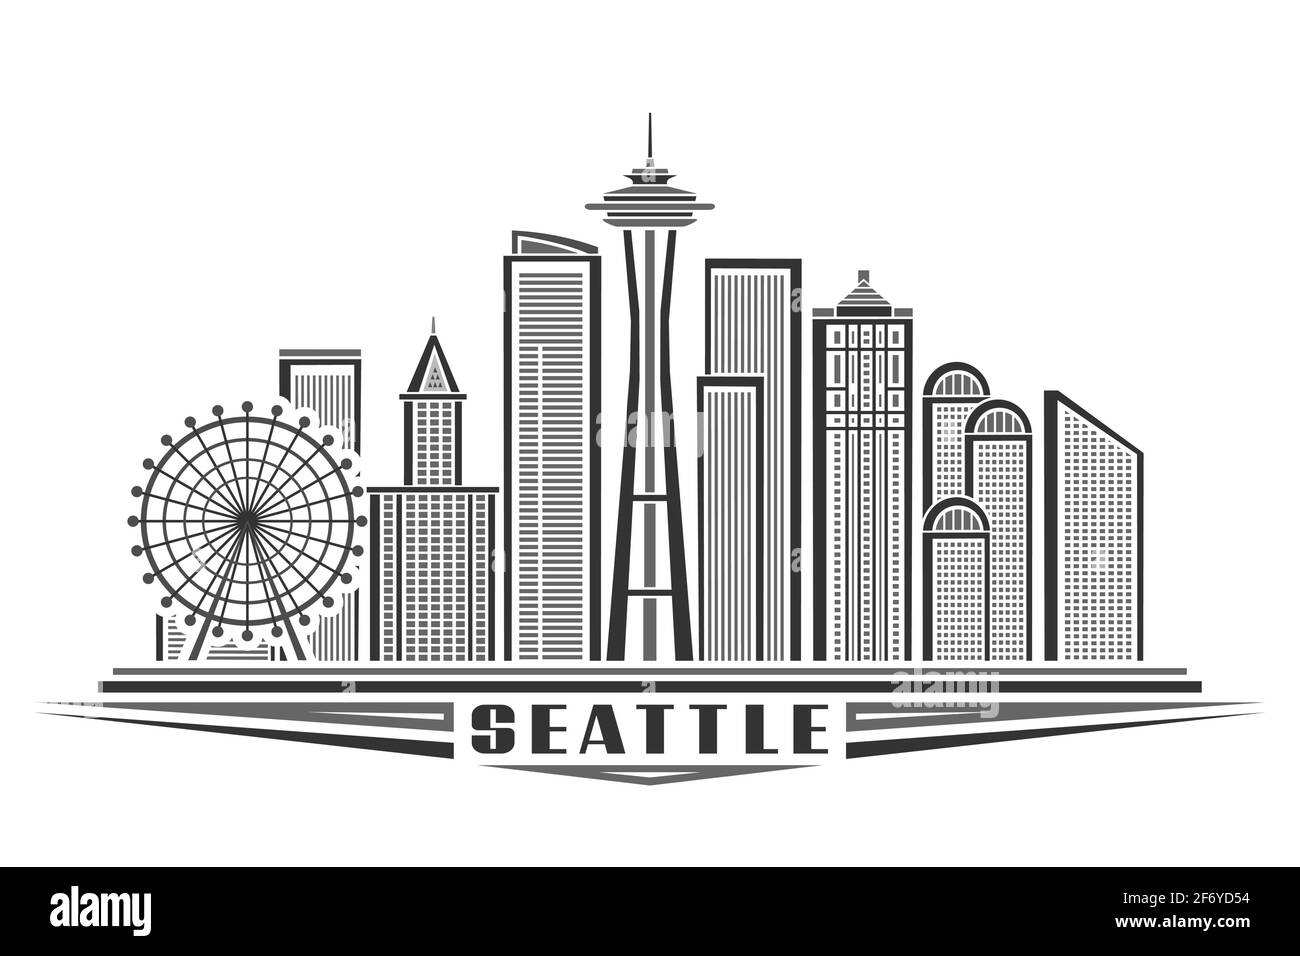 Illustration vectorielle de Seattle, affiche horizontale monochrome avec dessin-plan de la ville de seattle, concept d'art urbain avec décoration unique Illustration de Vecteur